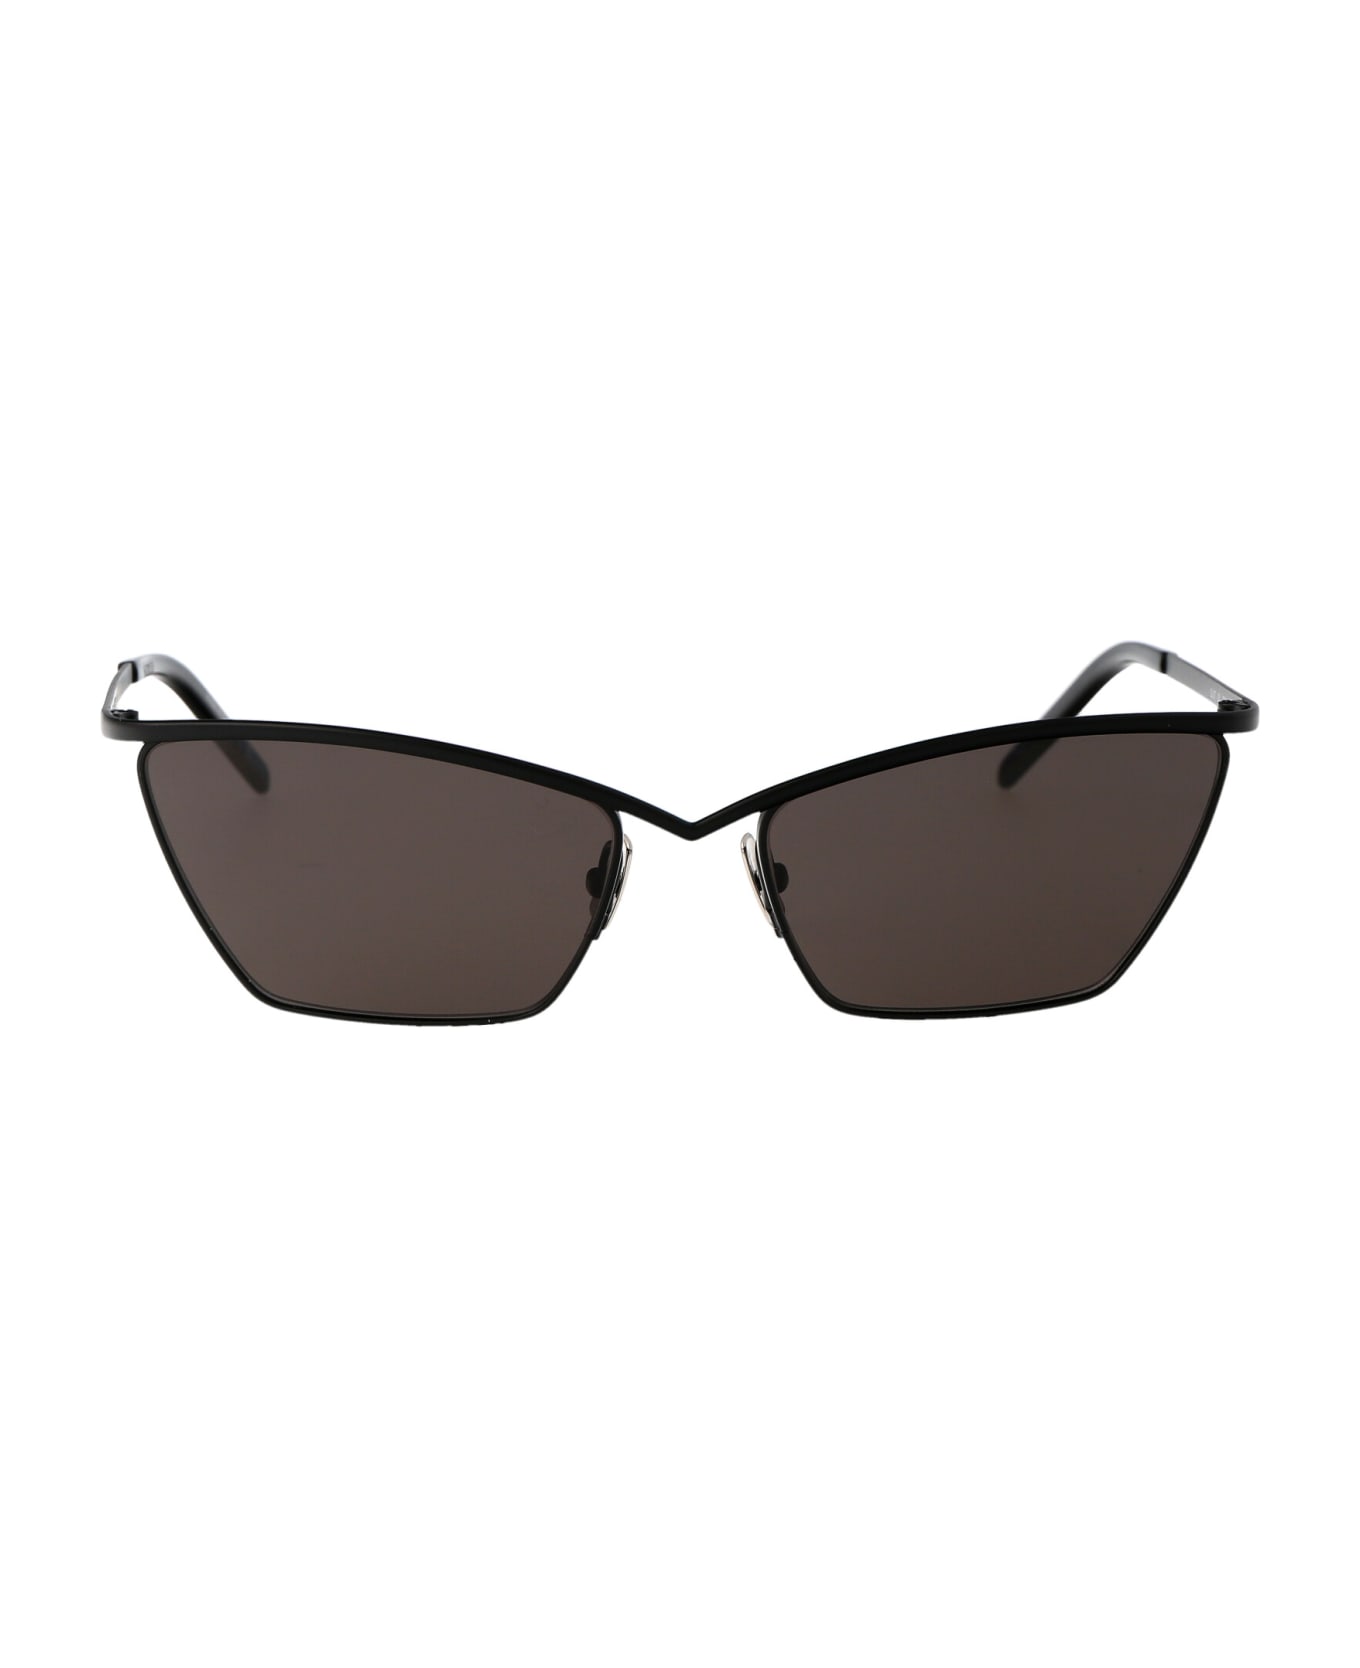 Saint Laurent Eyewear Sl 637 Sunglasses - 001 BLACK BLACK BLACK